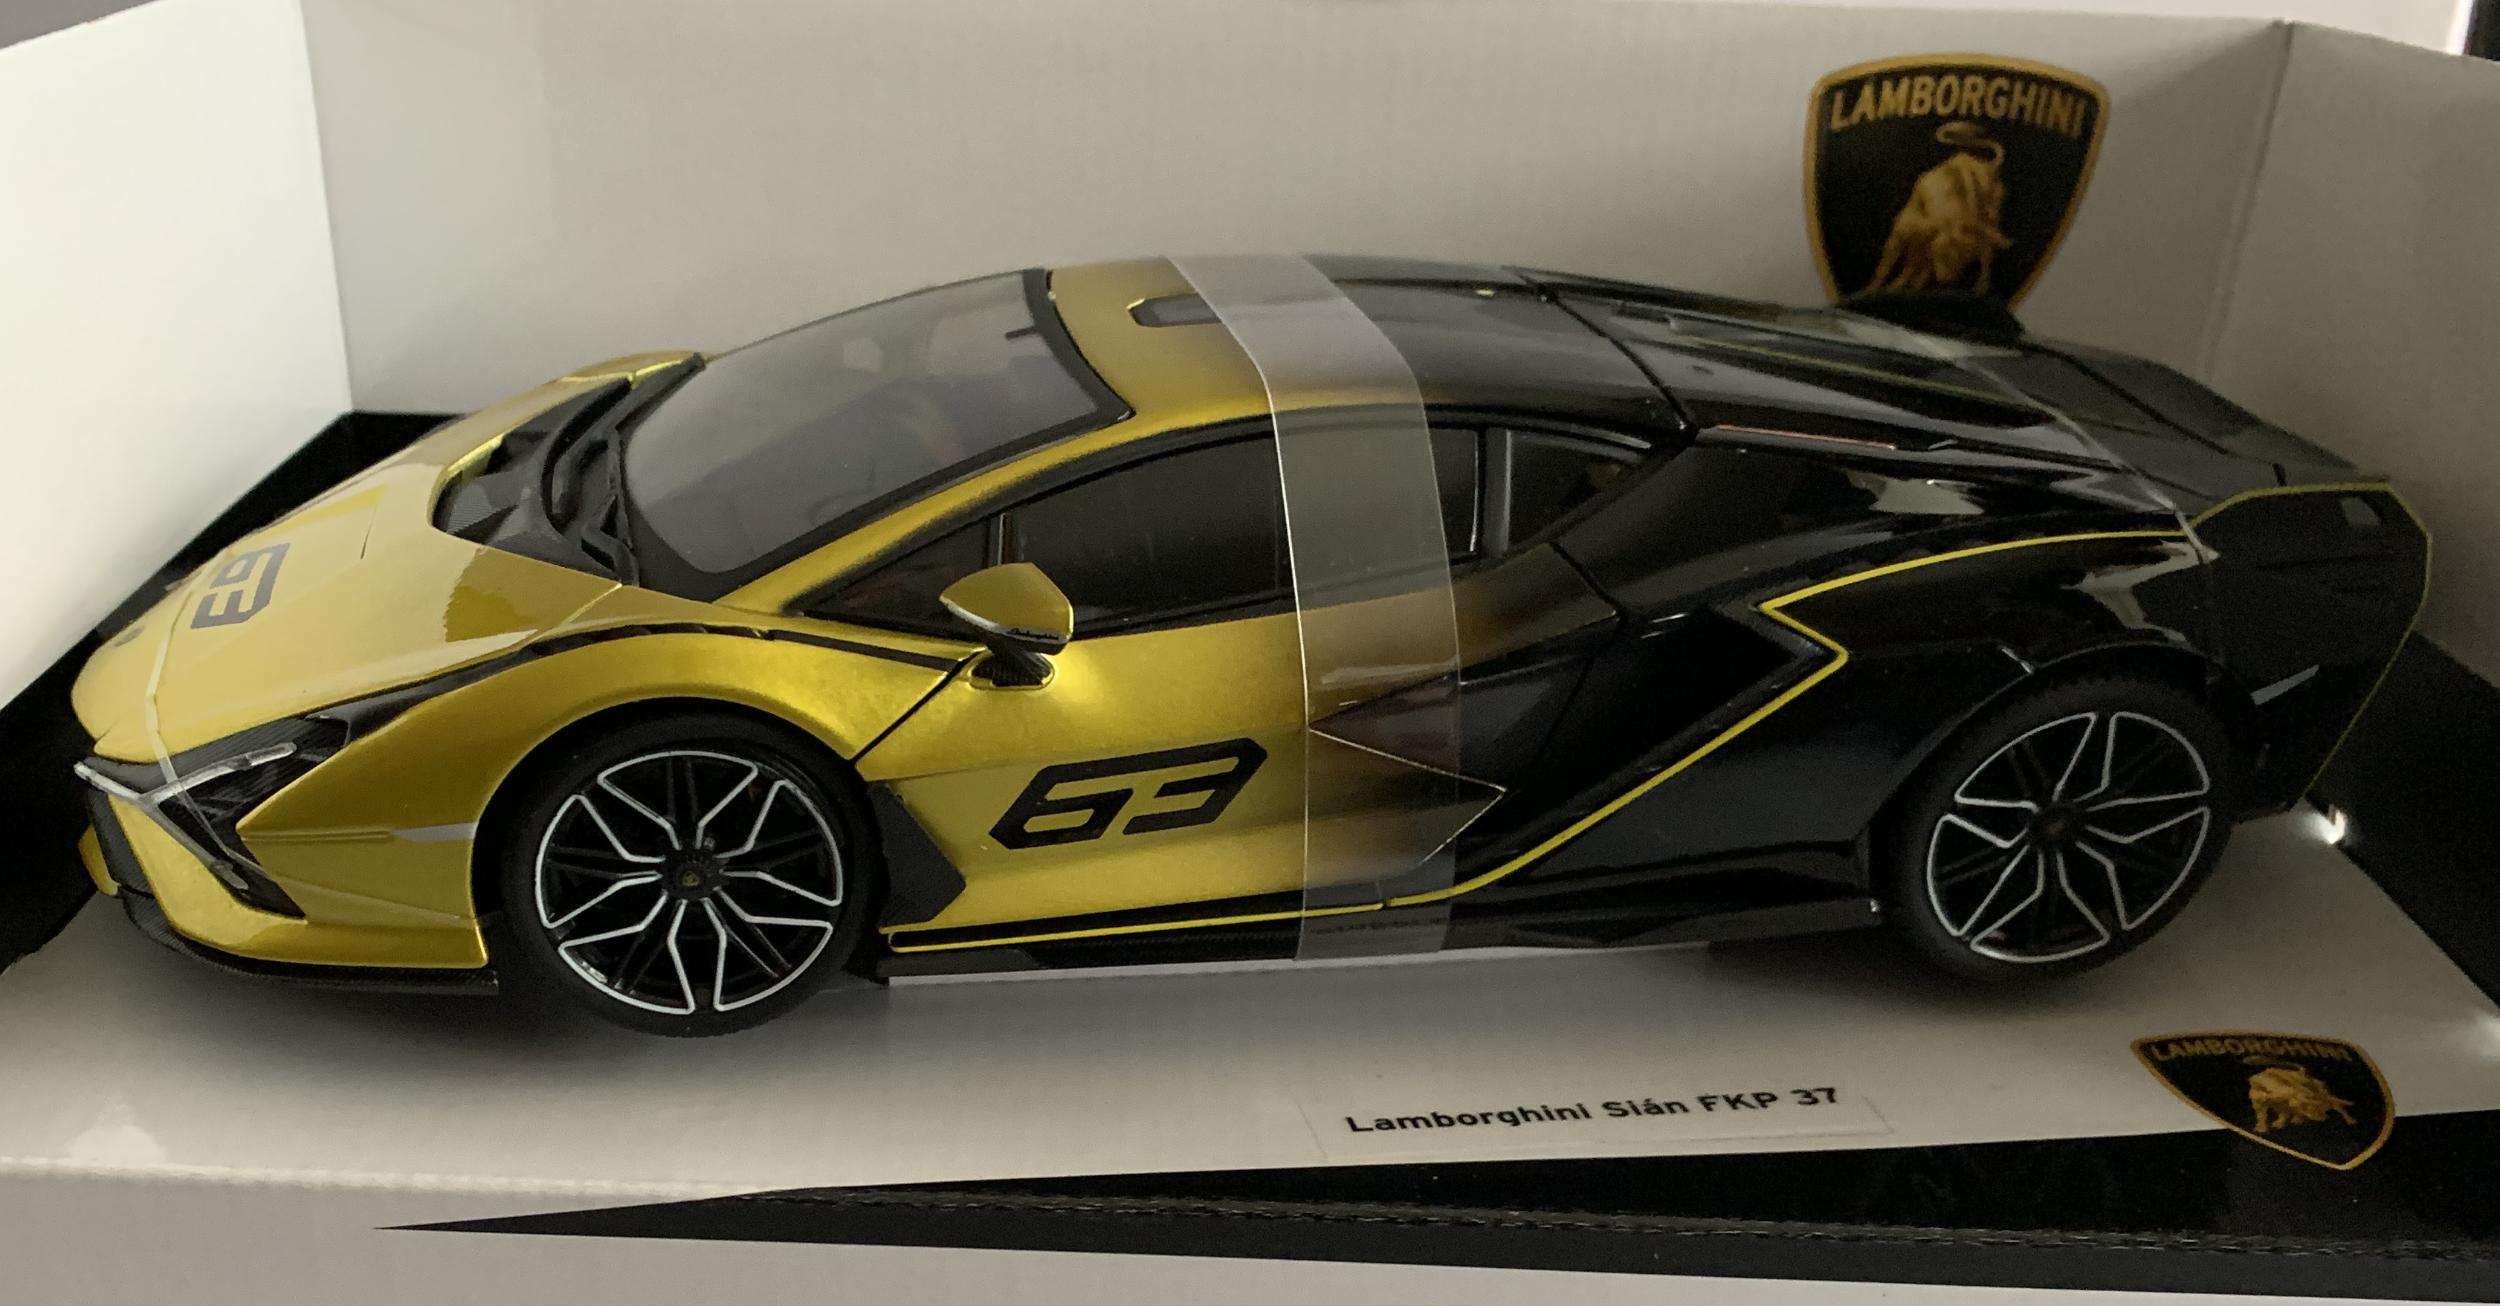 Lamborghini Sian FKP 37 in yellow fade #63 2020 1:18 scale model from Bburago